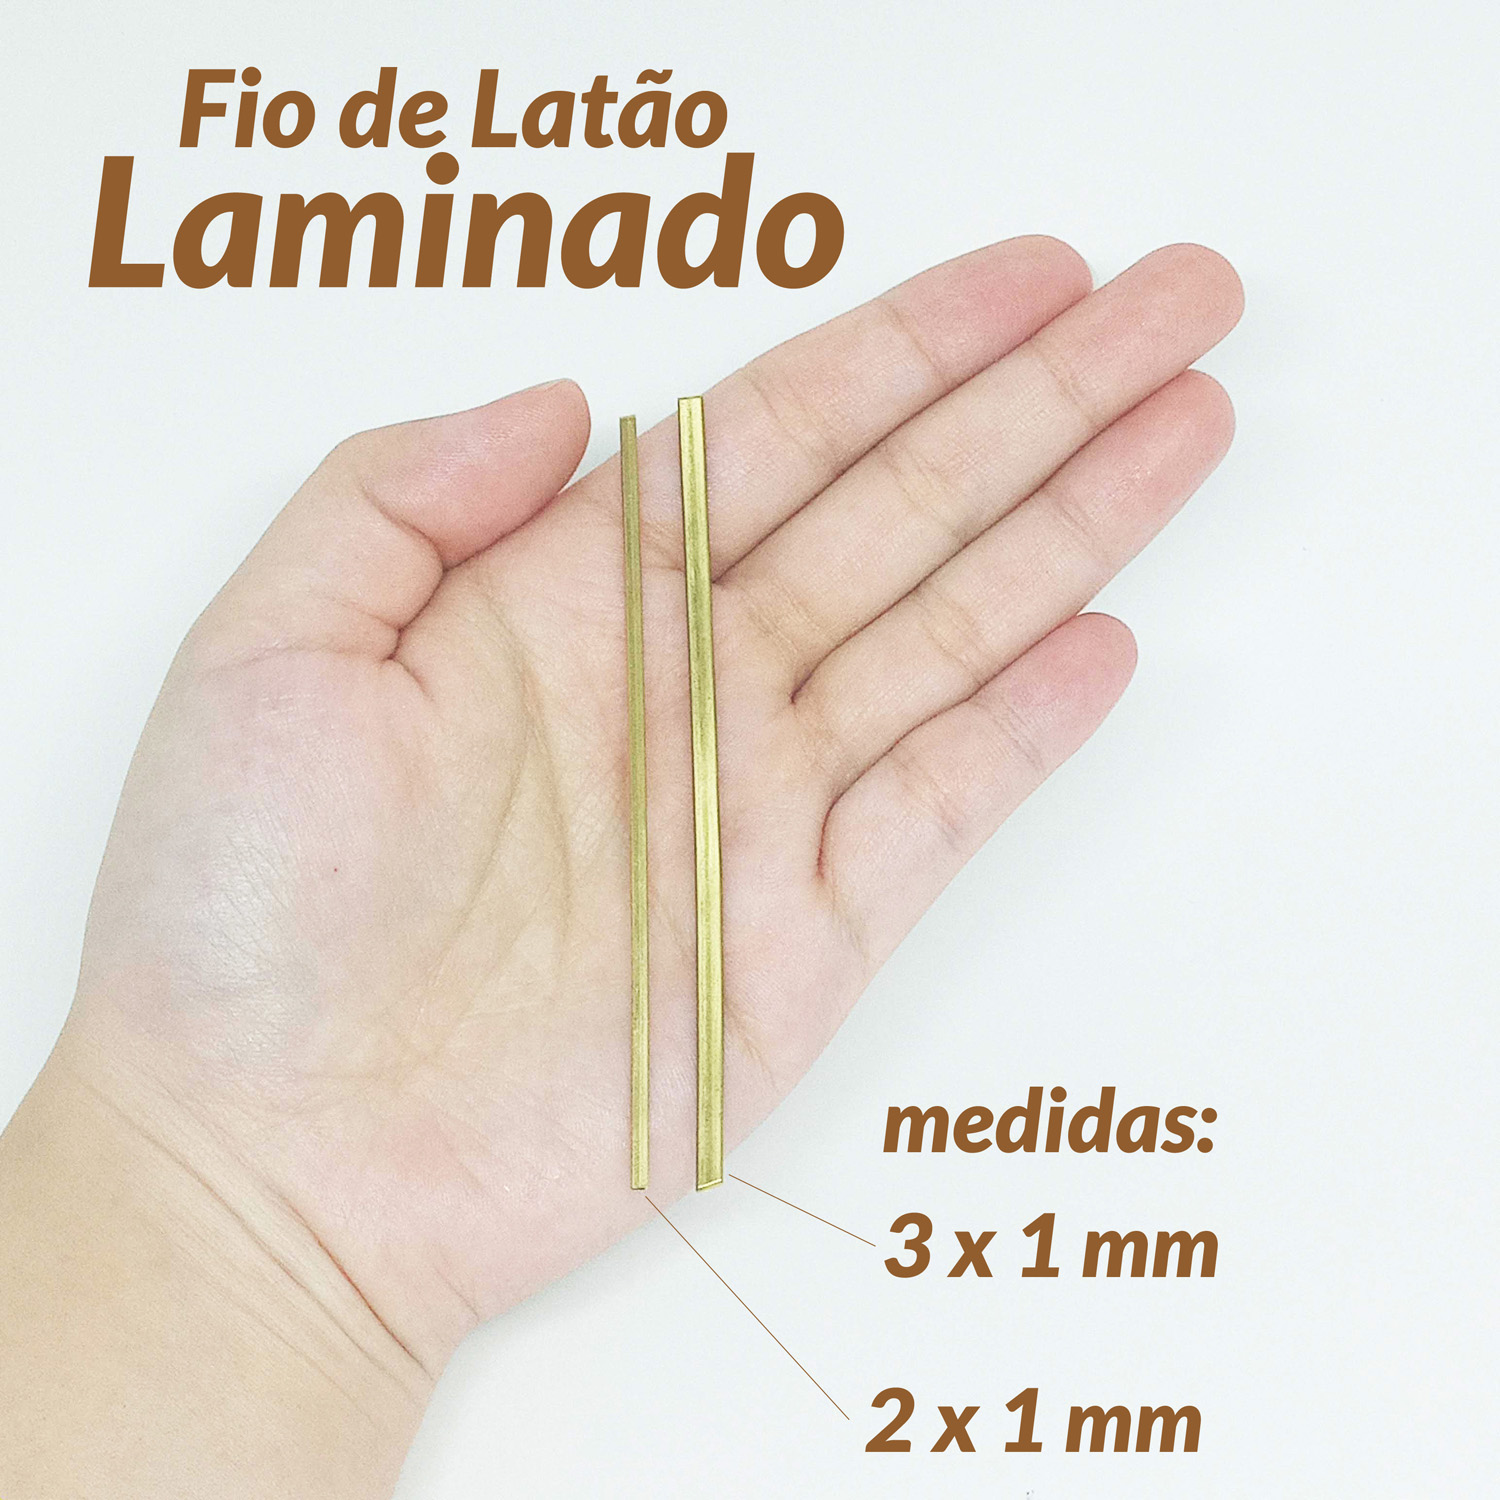 01-910181-FIO DE LATÃO LAMINADO 3X1 500G